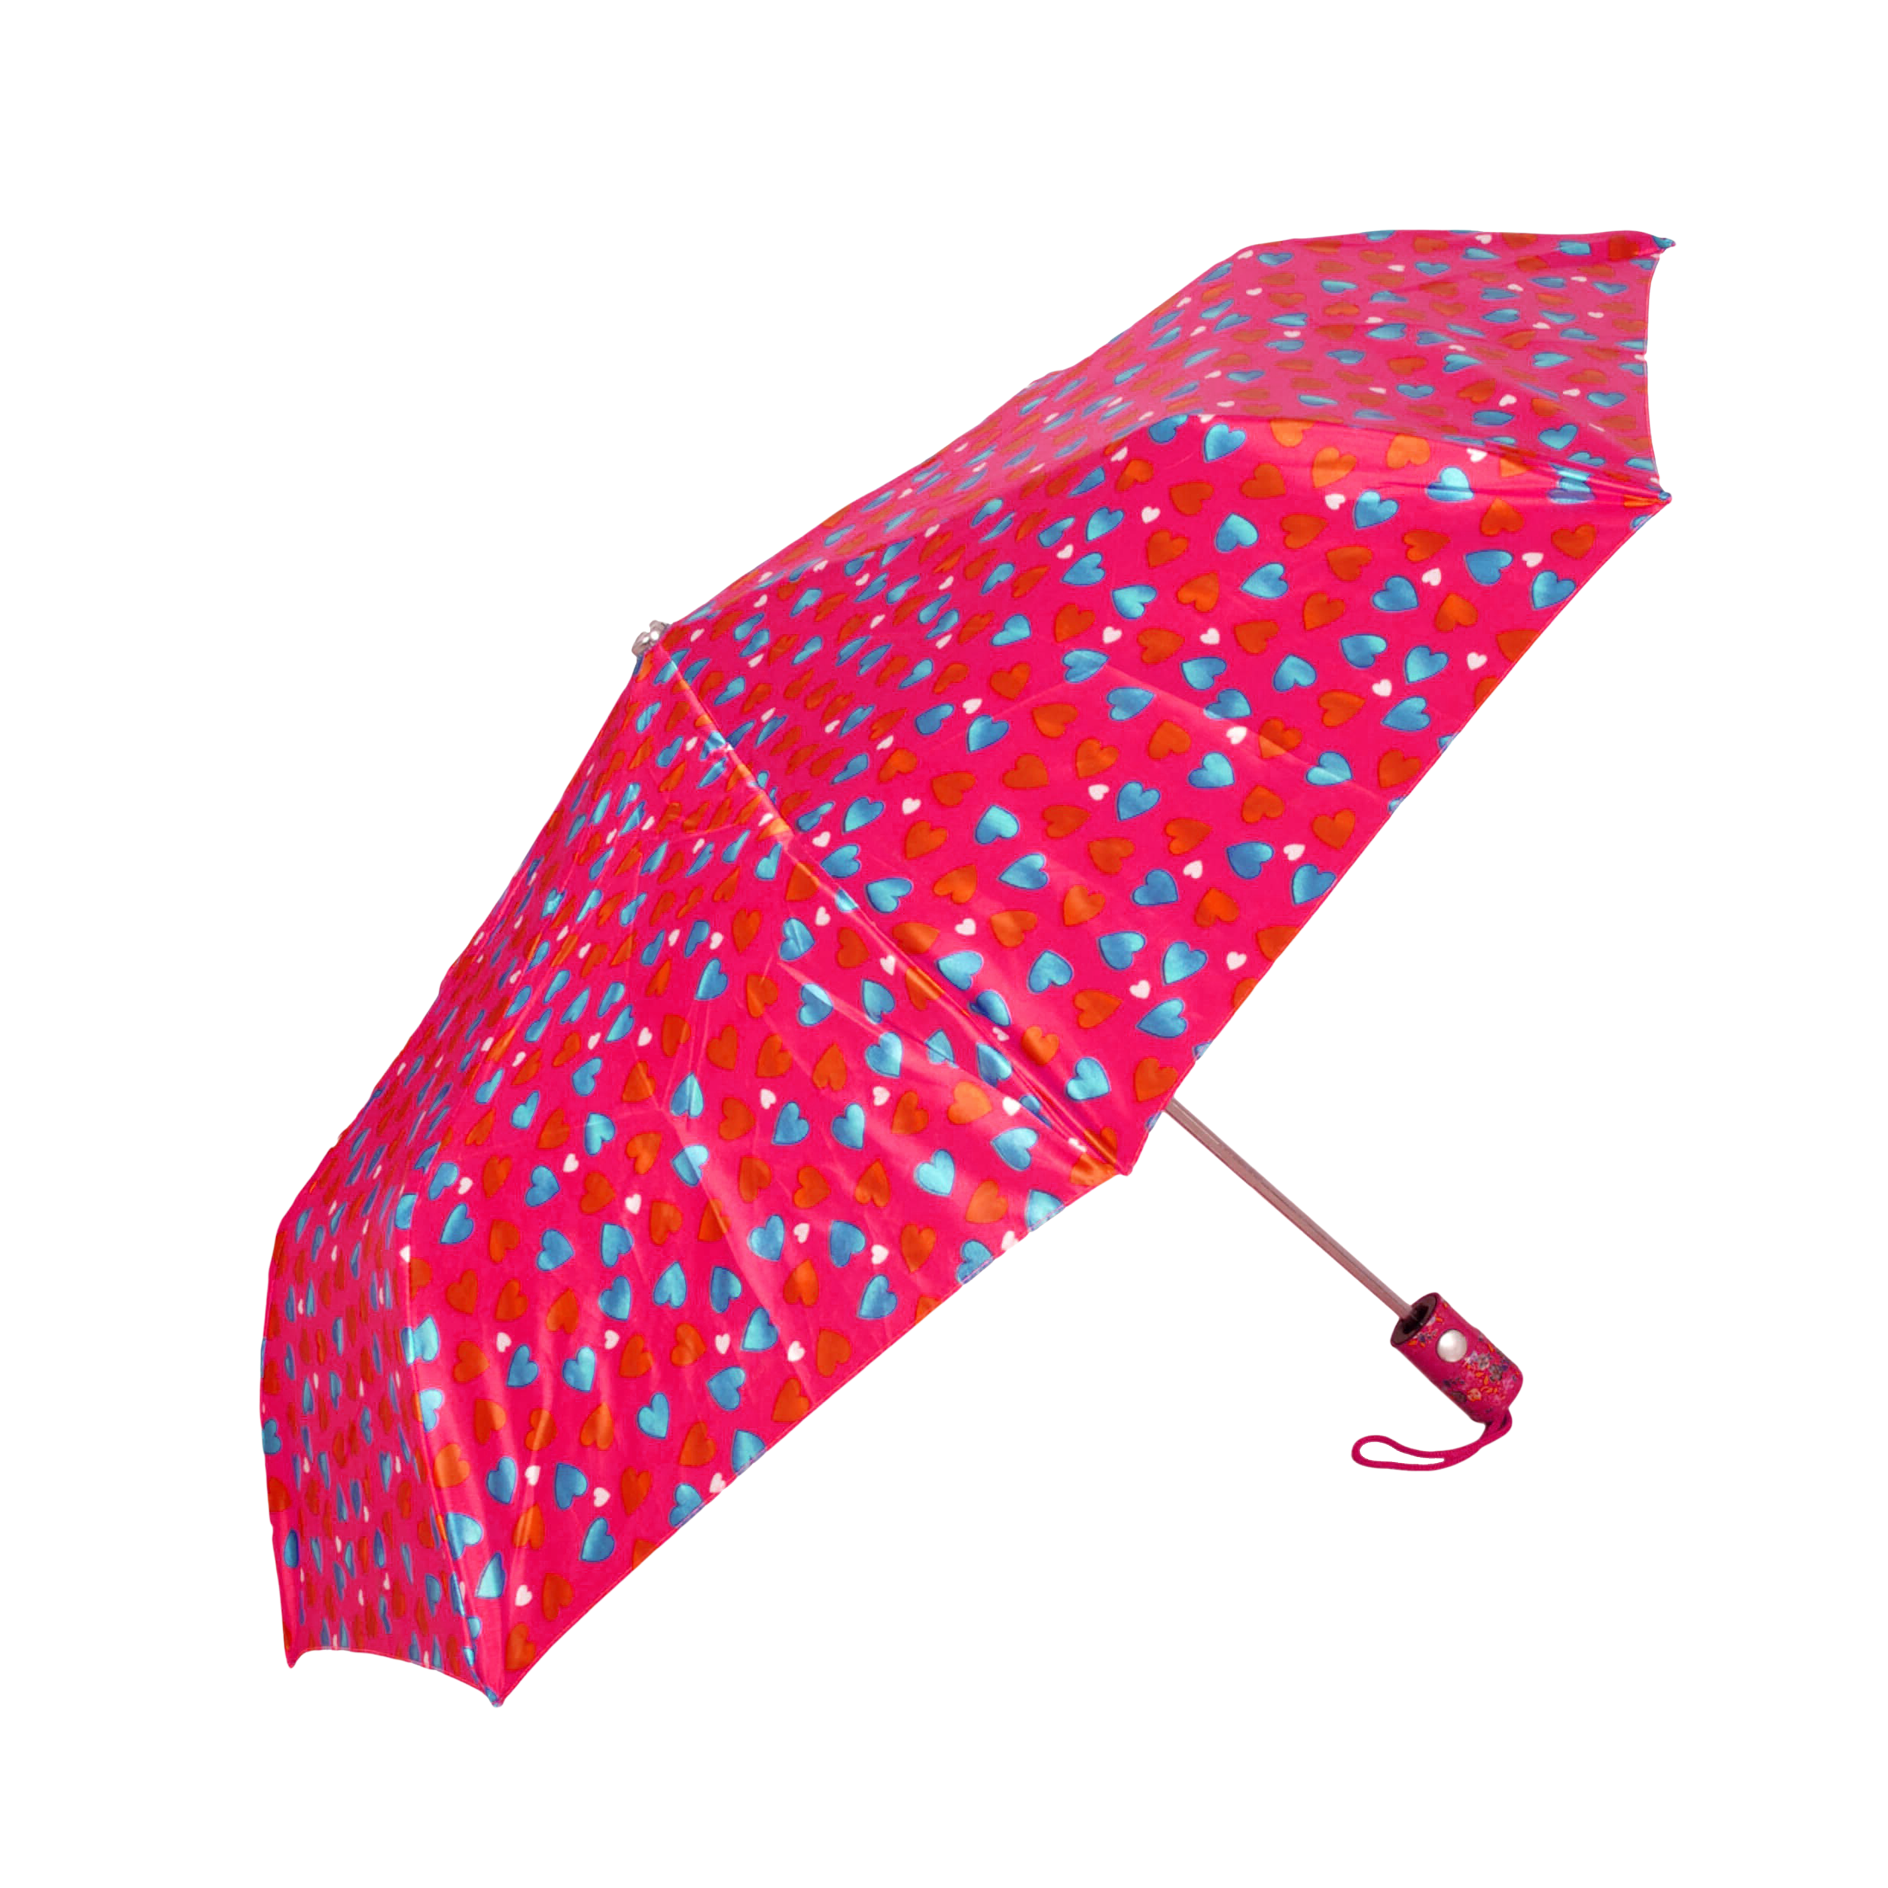 Pink Umbrella PNG Image in Transparent - Umbrella Png